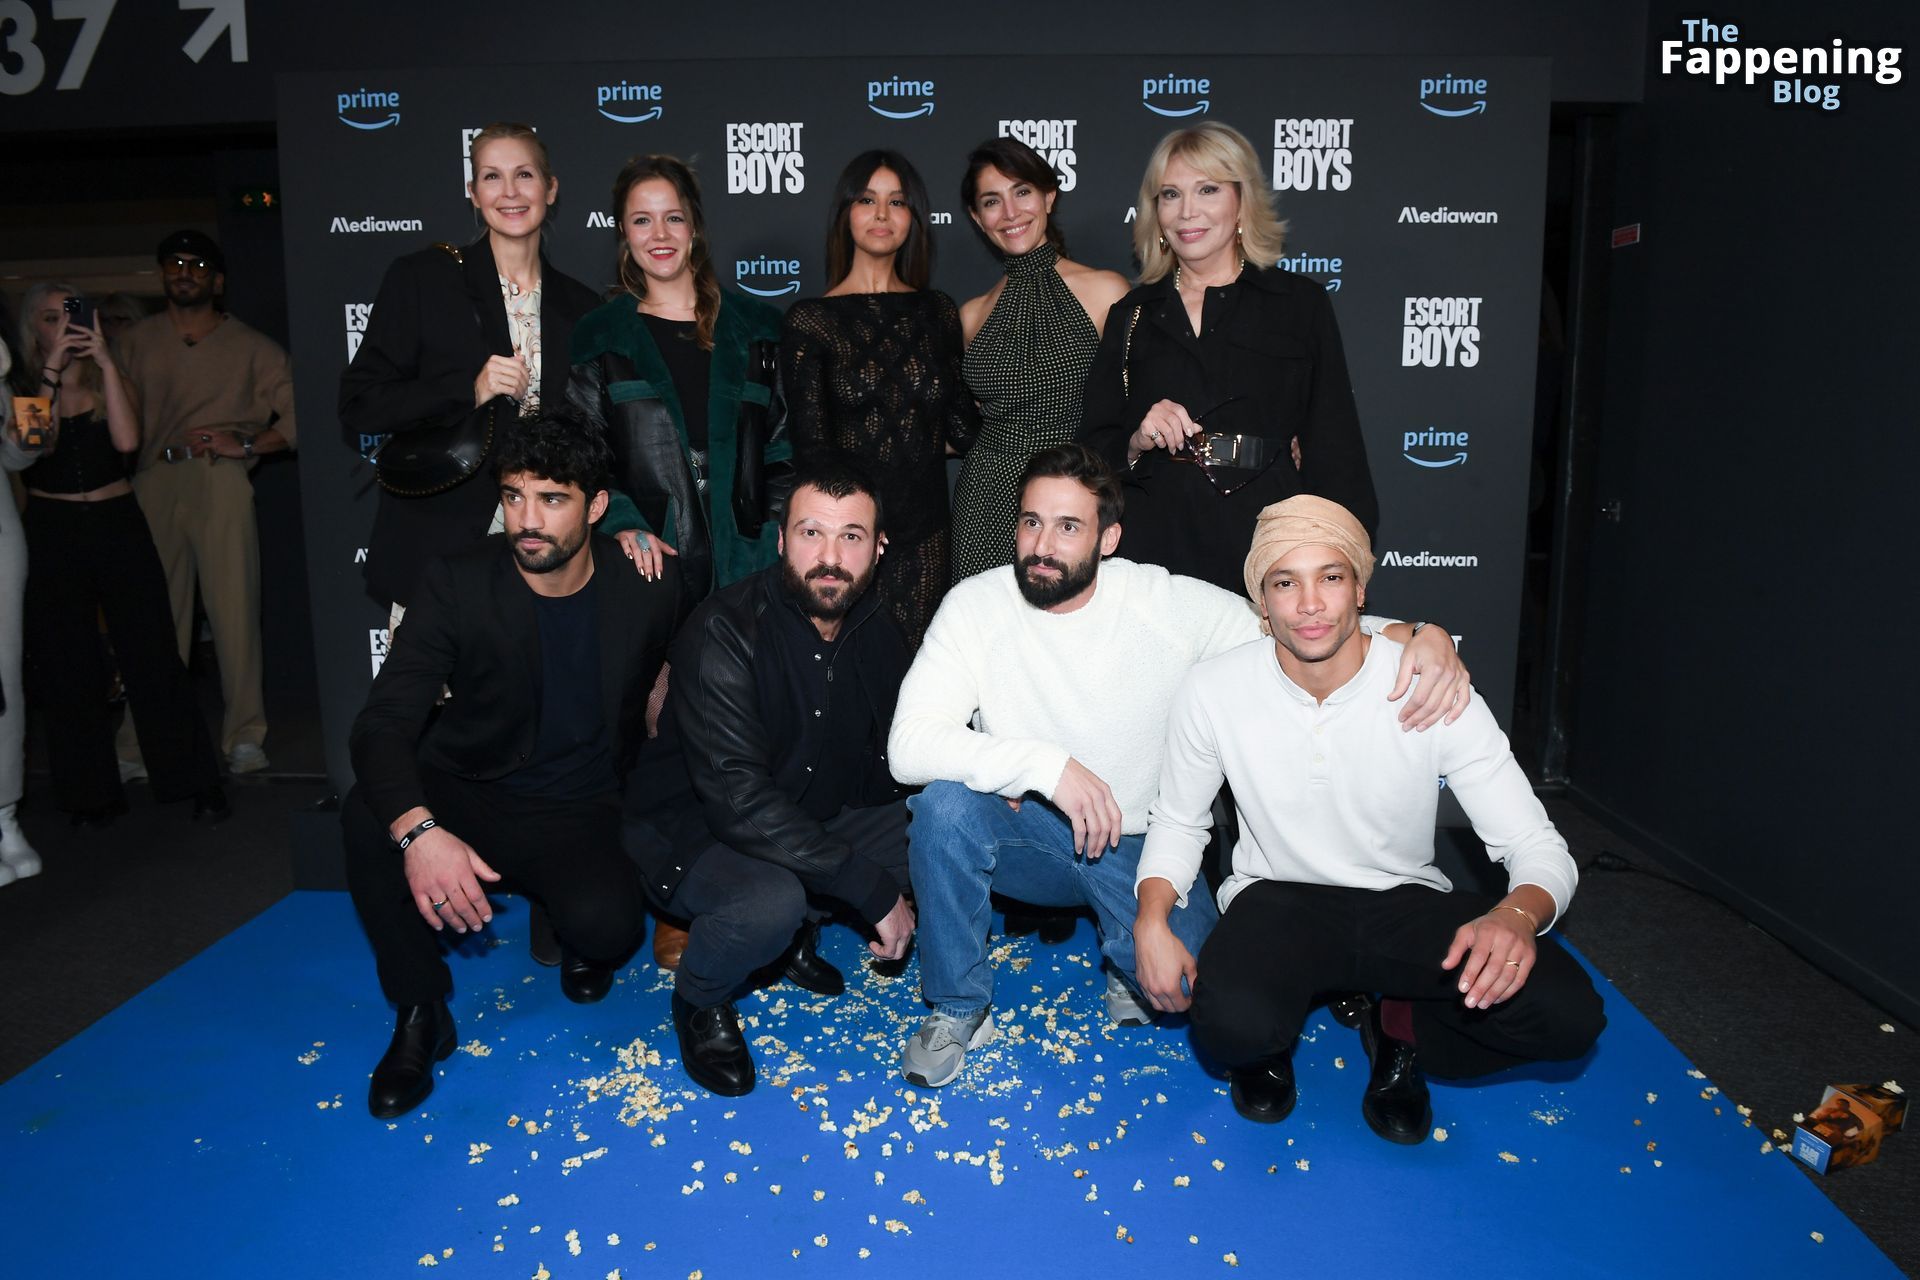 Zahia Dehar Flaunts Her Tits at the “Escort Boys” Premiere in Paris (119 Photos)